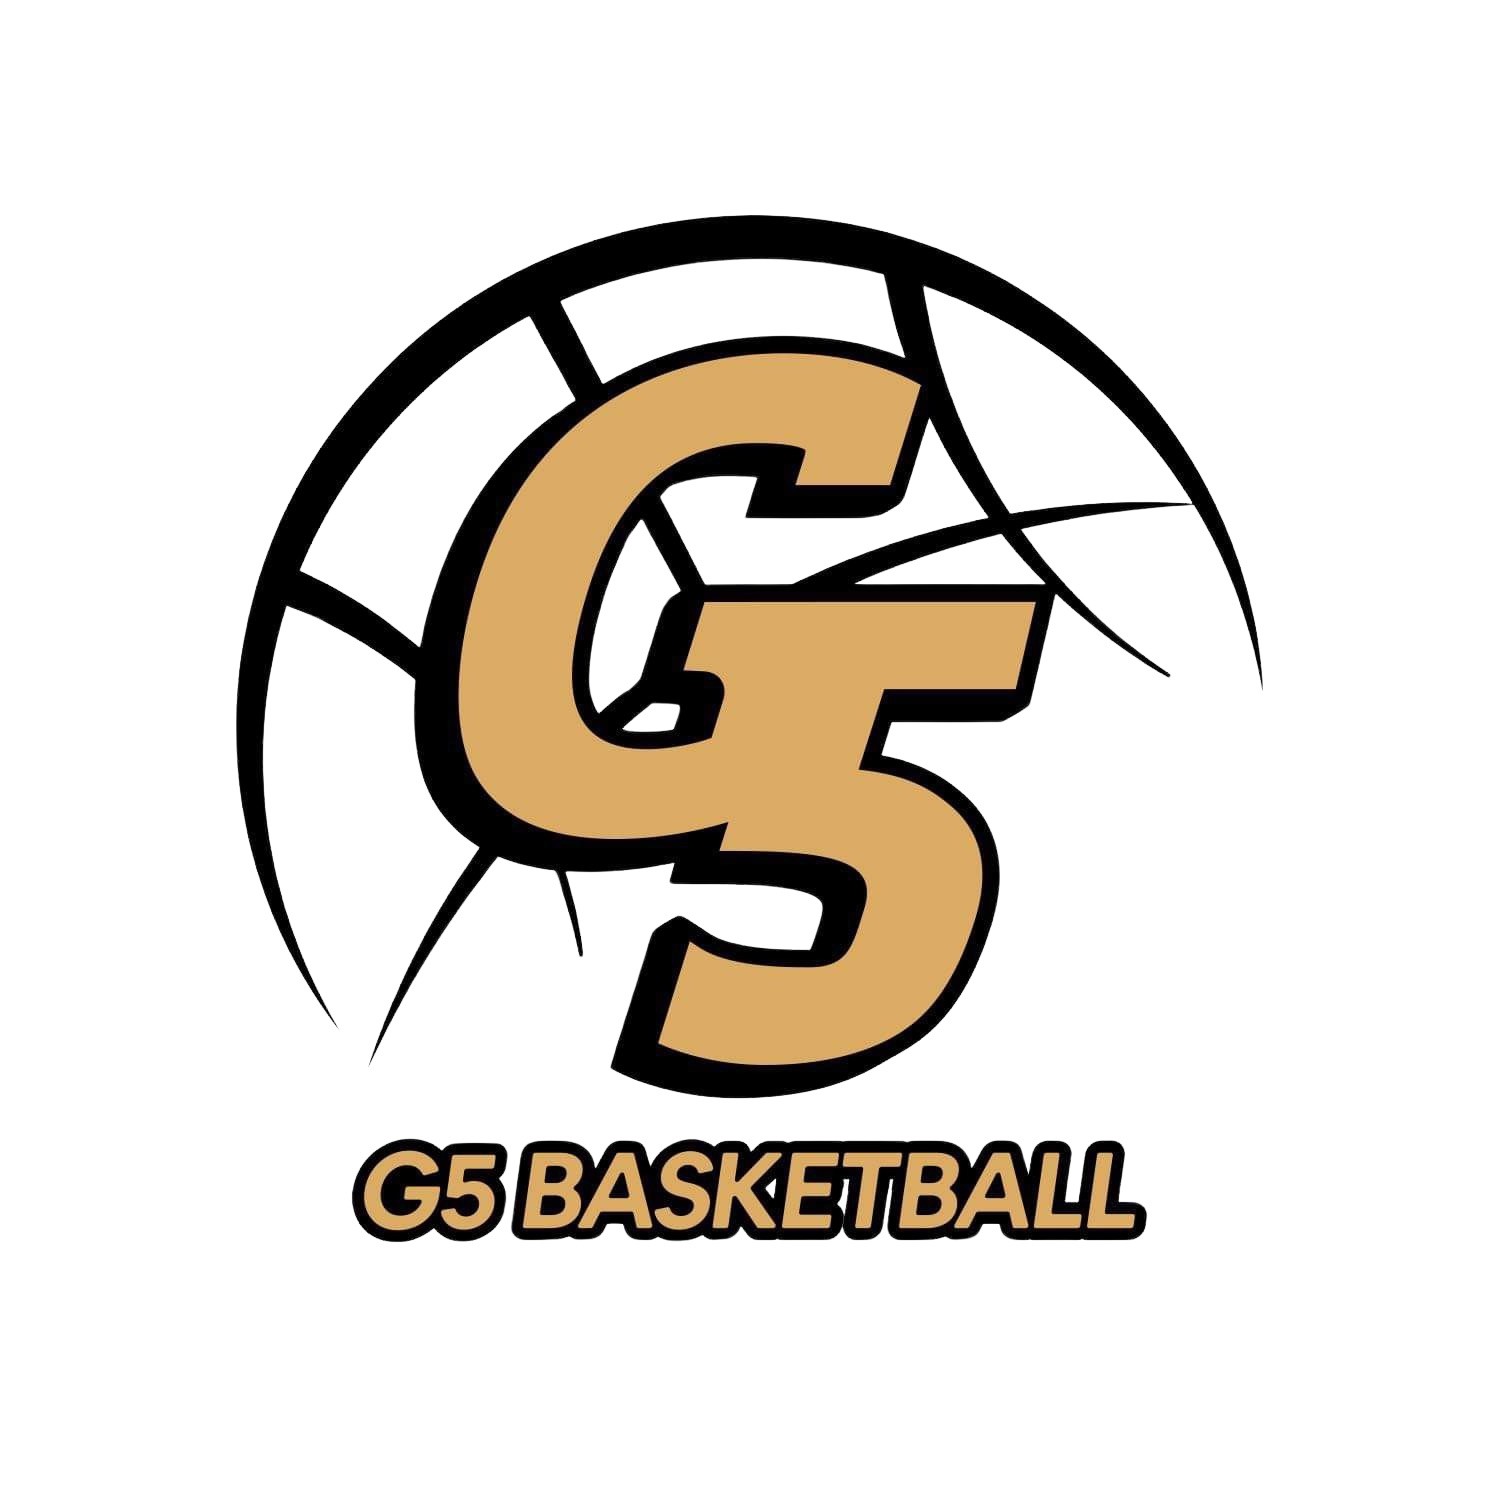 G5 Basketball